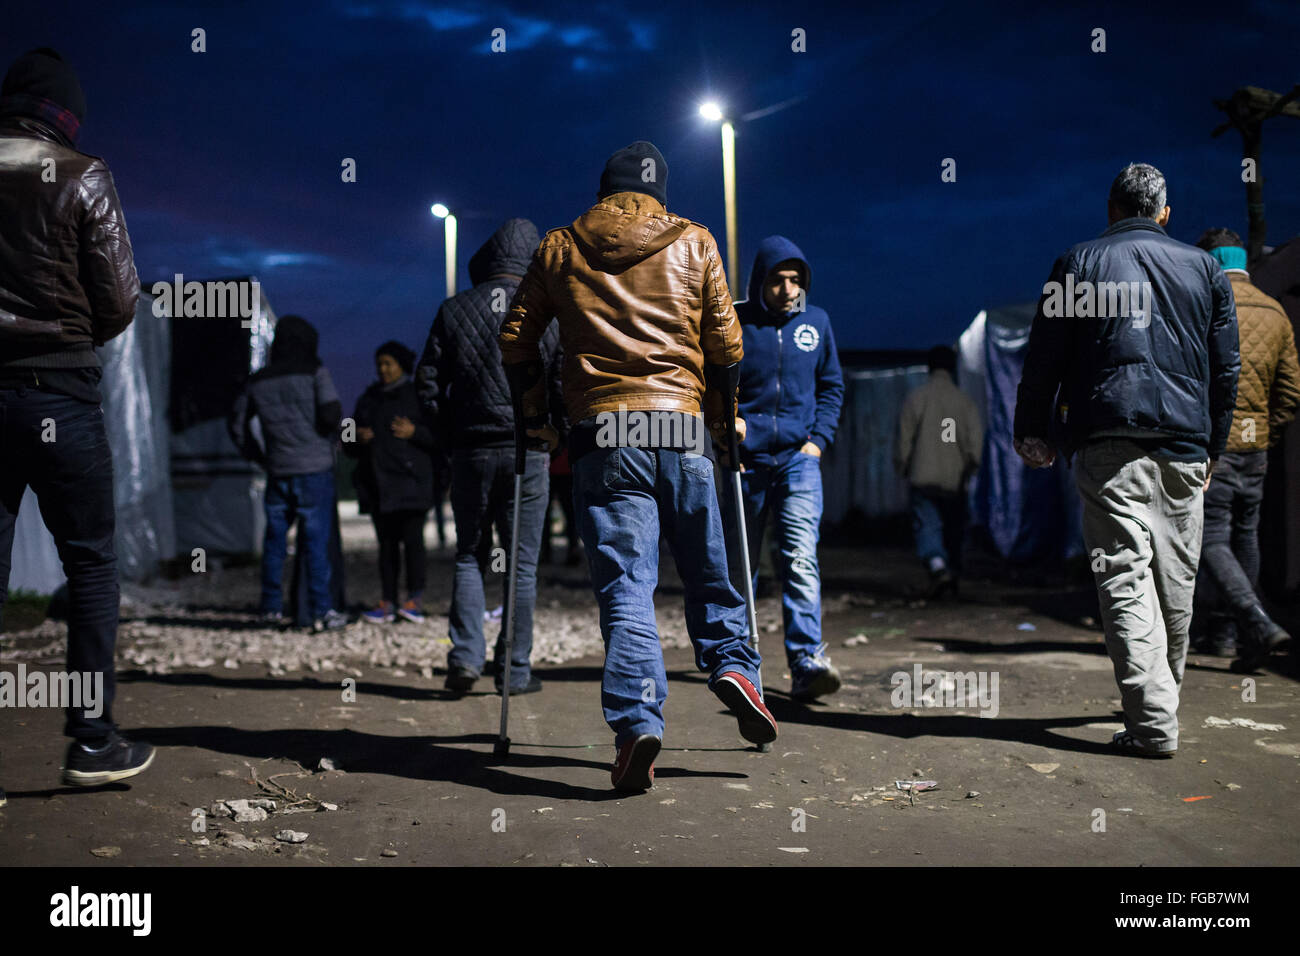 Ein Flüchtling auf Krücken bewegt sich durch den Dschungel Flüchtlingslager in Calais, Frankreich. Die Wege sind in der Nacht mehr los. Stockfoto